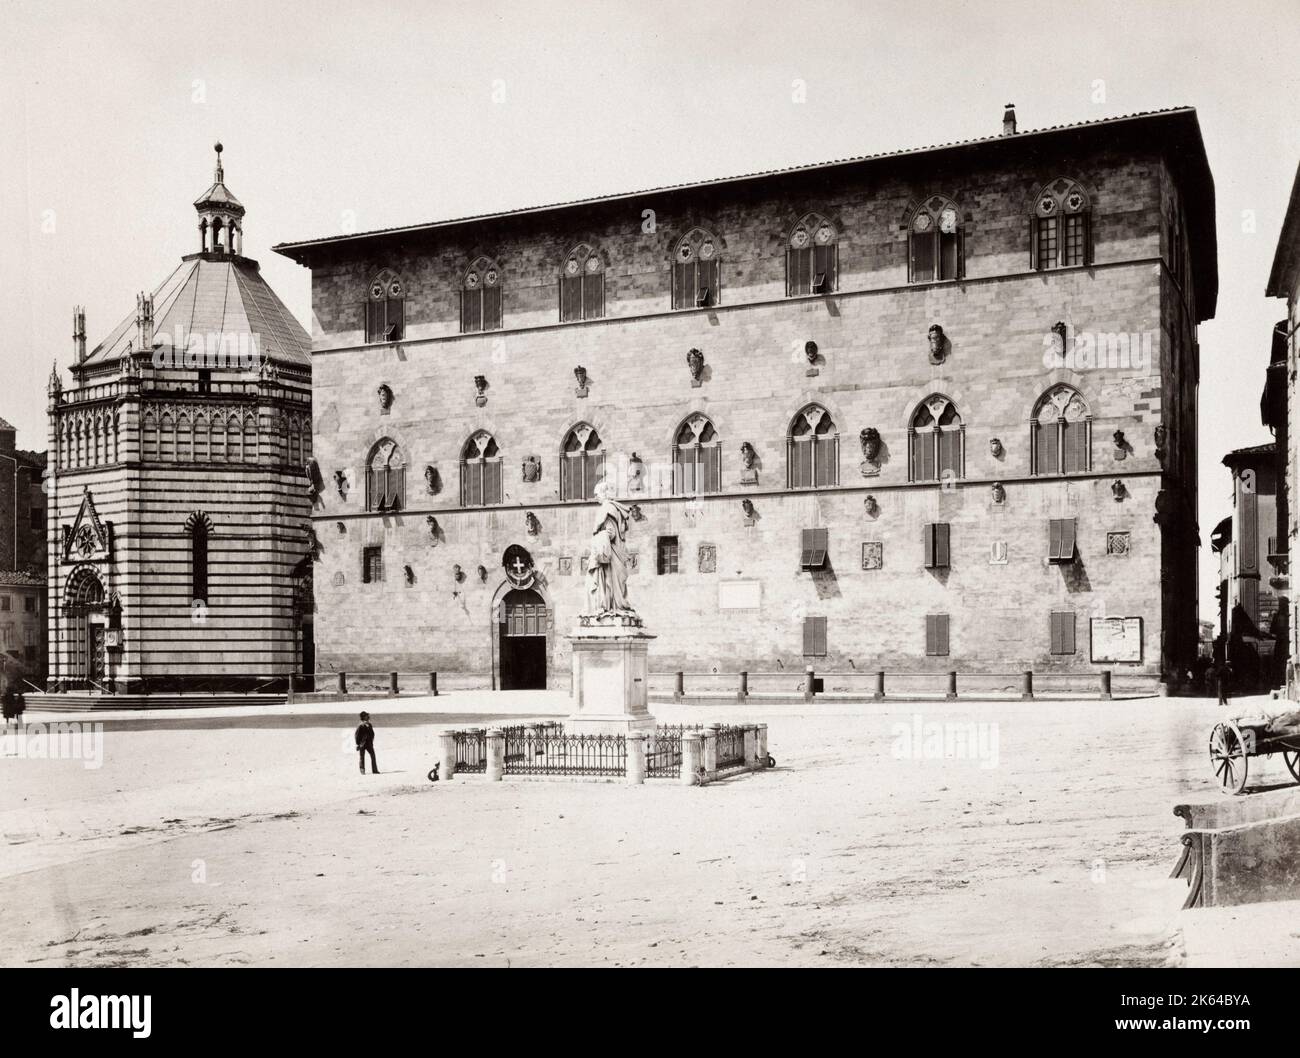 Oldtimer-Fotografie aus dem 19. Jahrhundert - Palazzo Pretorio oder Palazzo del PodestÃƒÂ , Pistoia, Toskana, Italien. Das heutige Gebäude, das hauptsächlich ein neogotisches Gebäude aus dem 19. Jahrhundert ist, beherbergt heute die lokalen Gerichte von Pistoia (Tribunale di Pistoia). Stockfoto